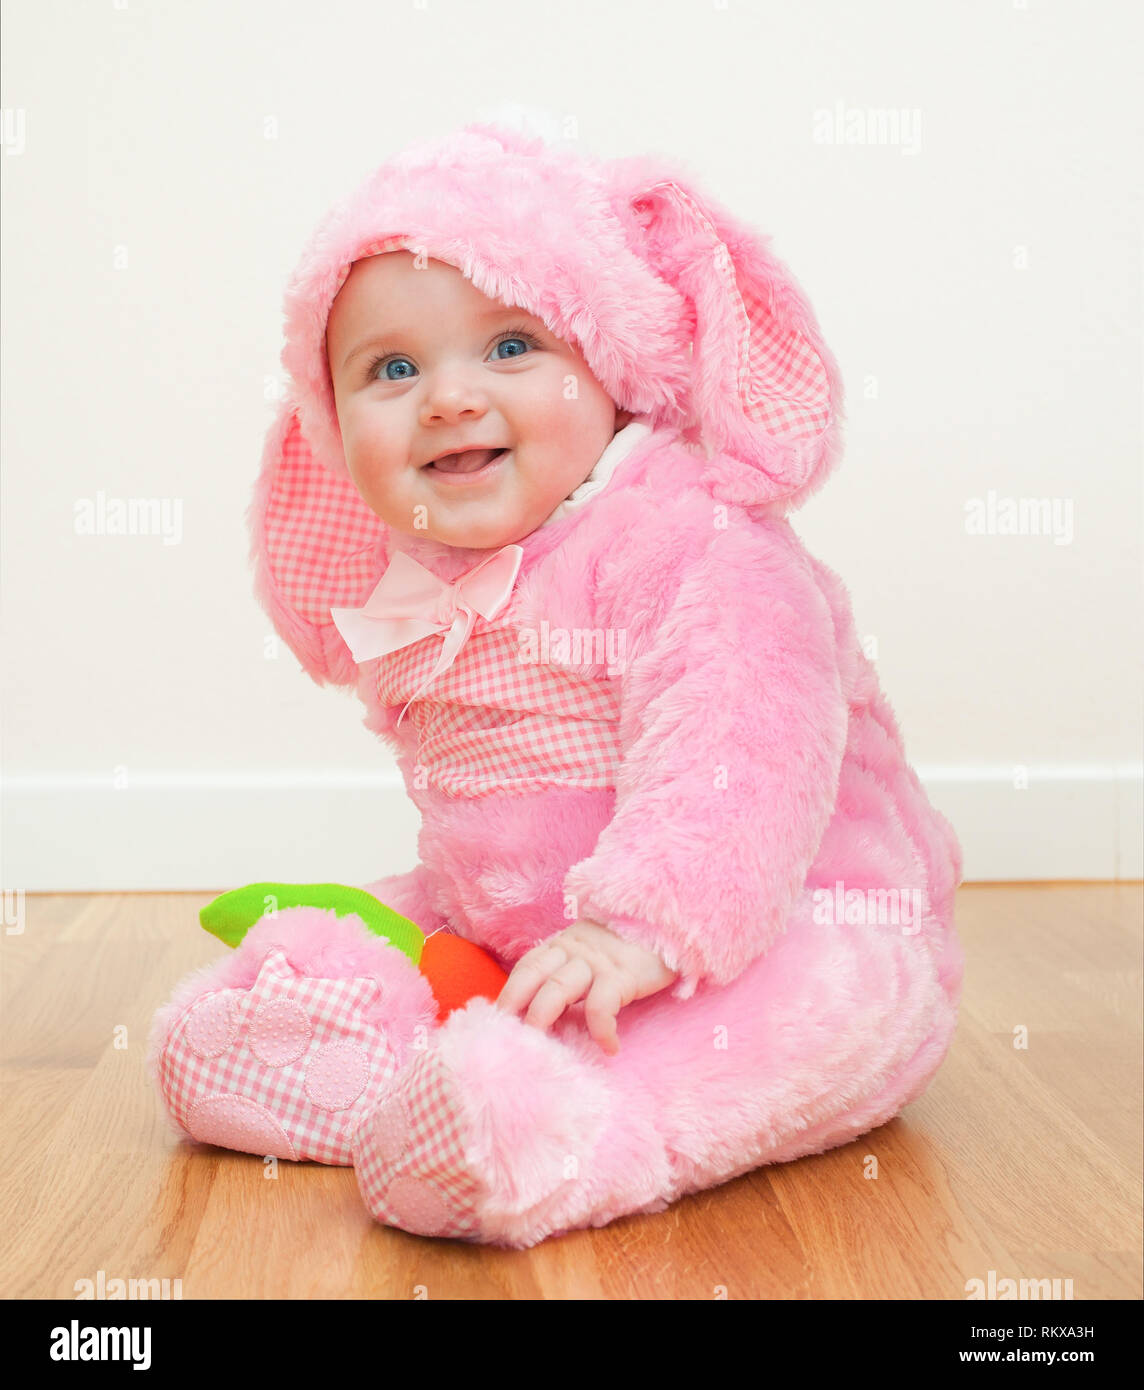 Kleinen niedlichen Baby in einem rosa Bunny Suit. Sitzt das Kind auf dem Holzboden. Stockfoto